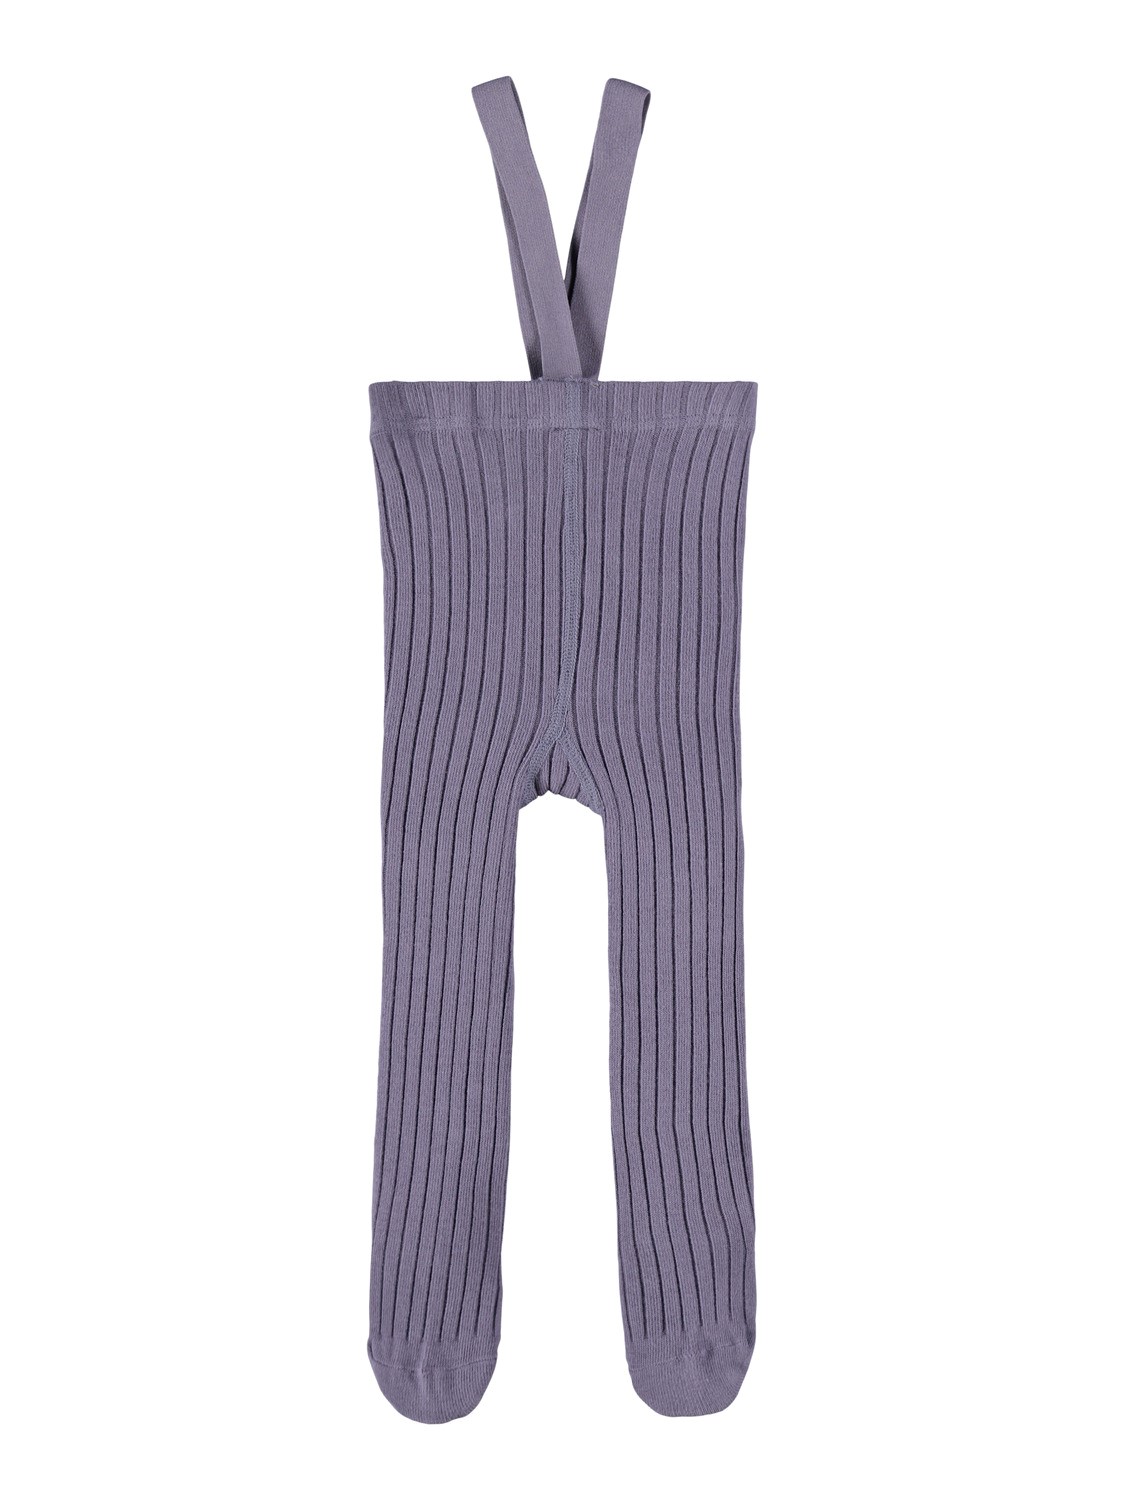 Strømpebukser med seler lilla – Sokker og strømpebukser lilla strømpebukse med seler – Mio Trend